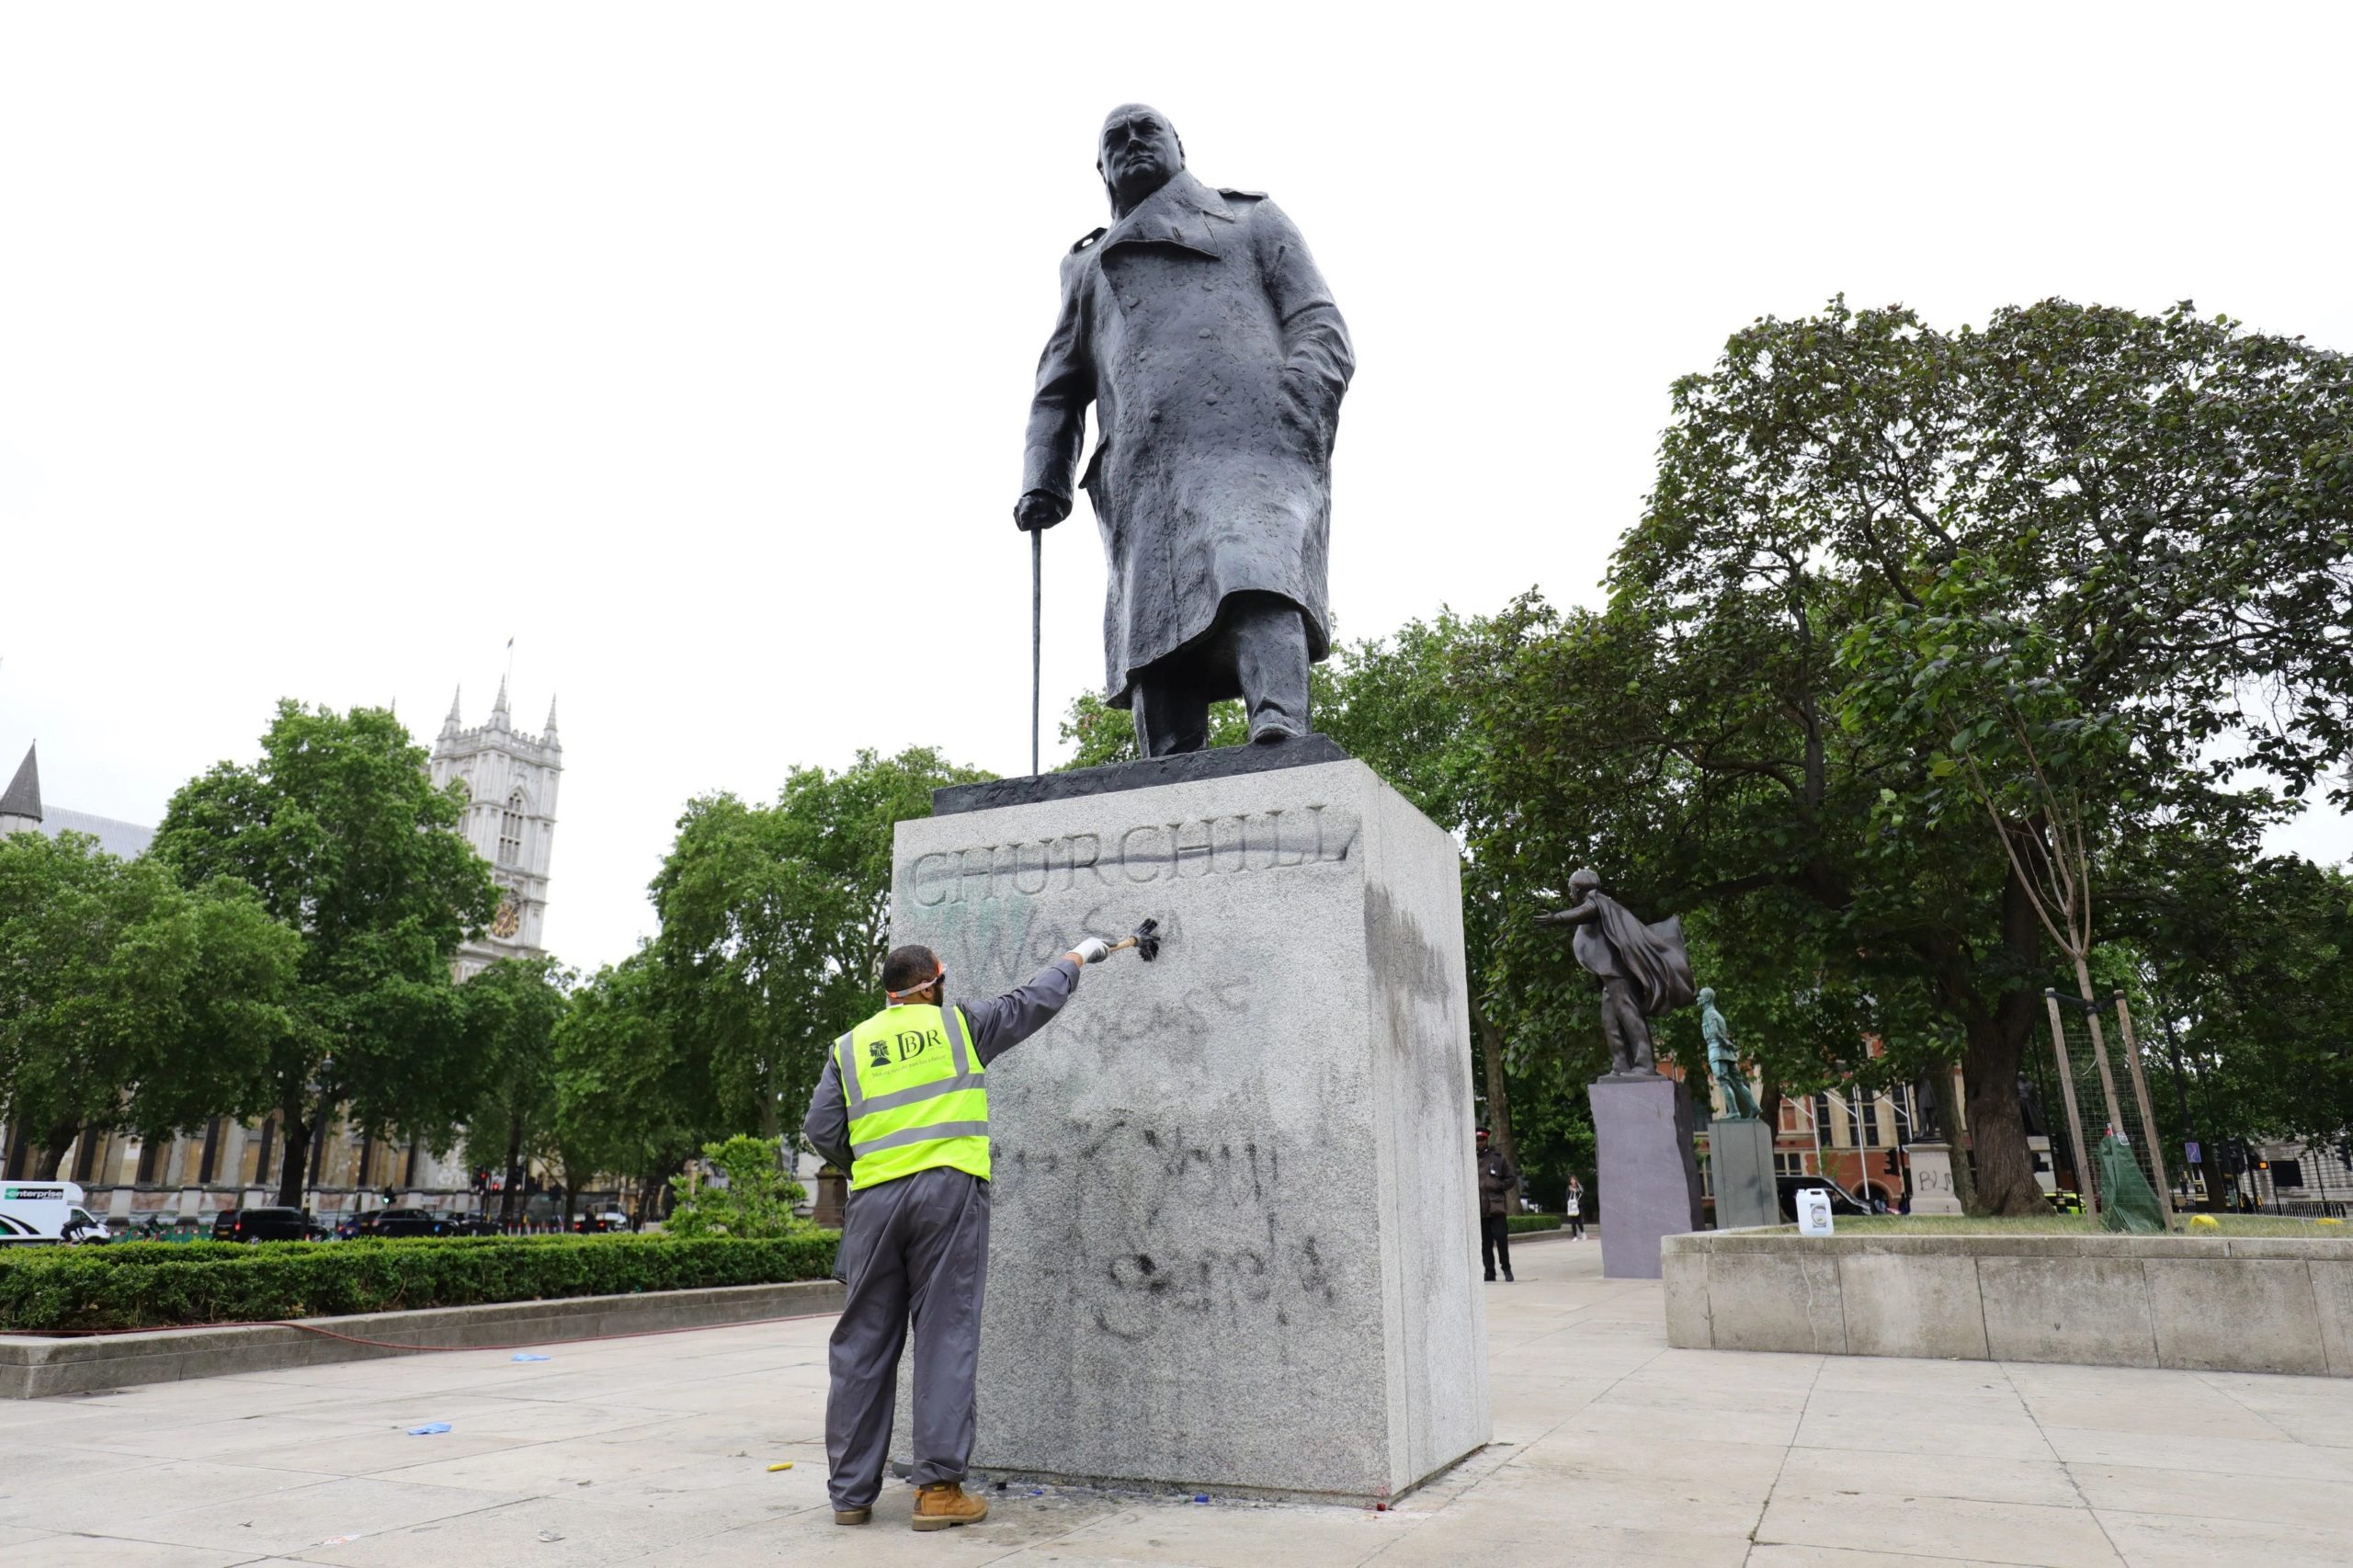 من جديد! تعرض تمثال "ونستون تشرشل" للتشويه في لندن 